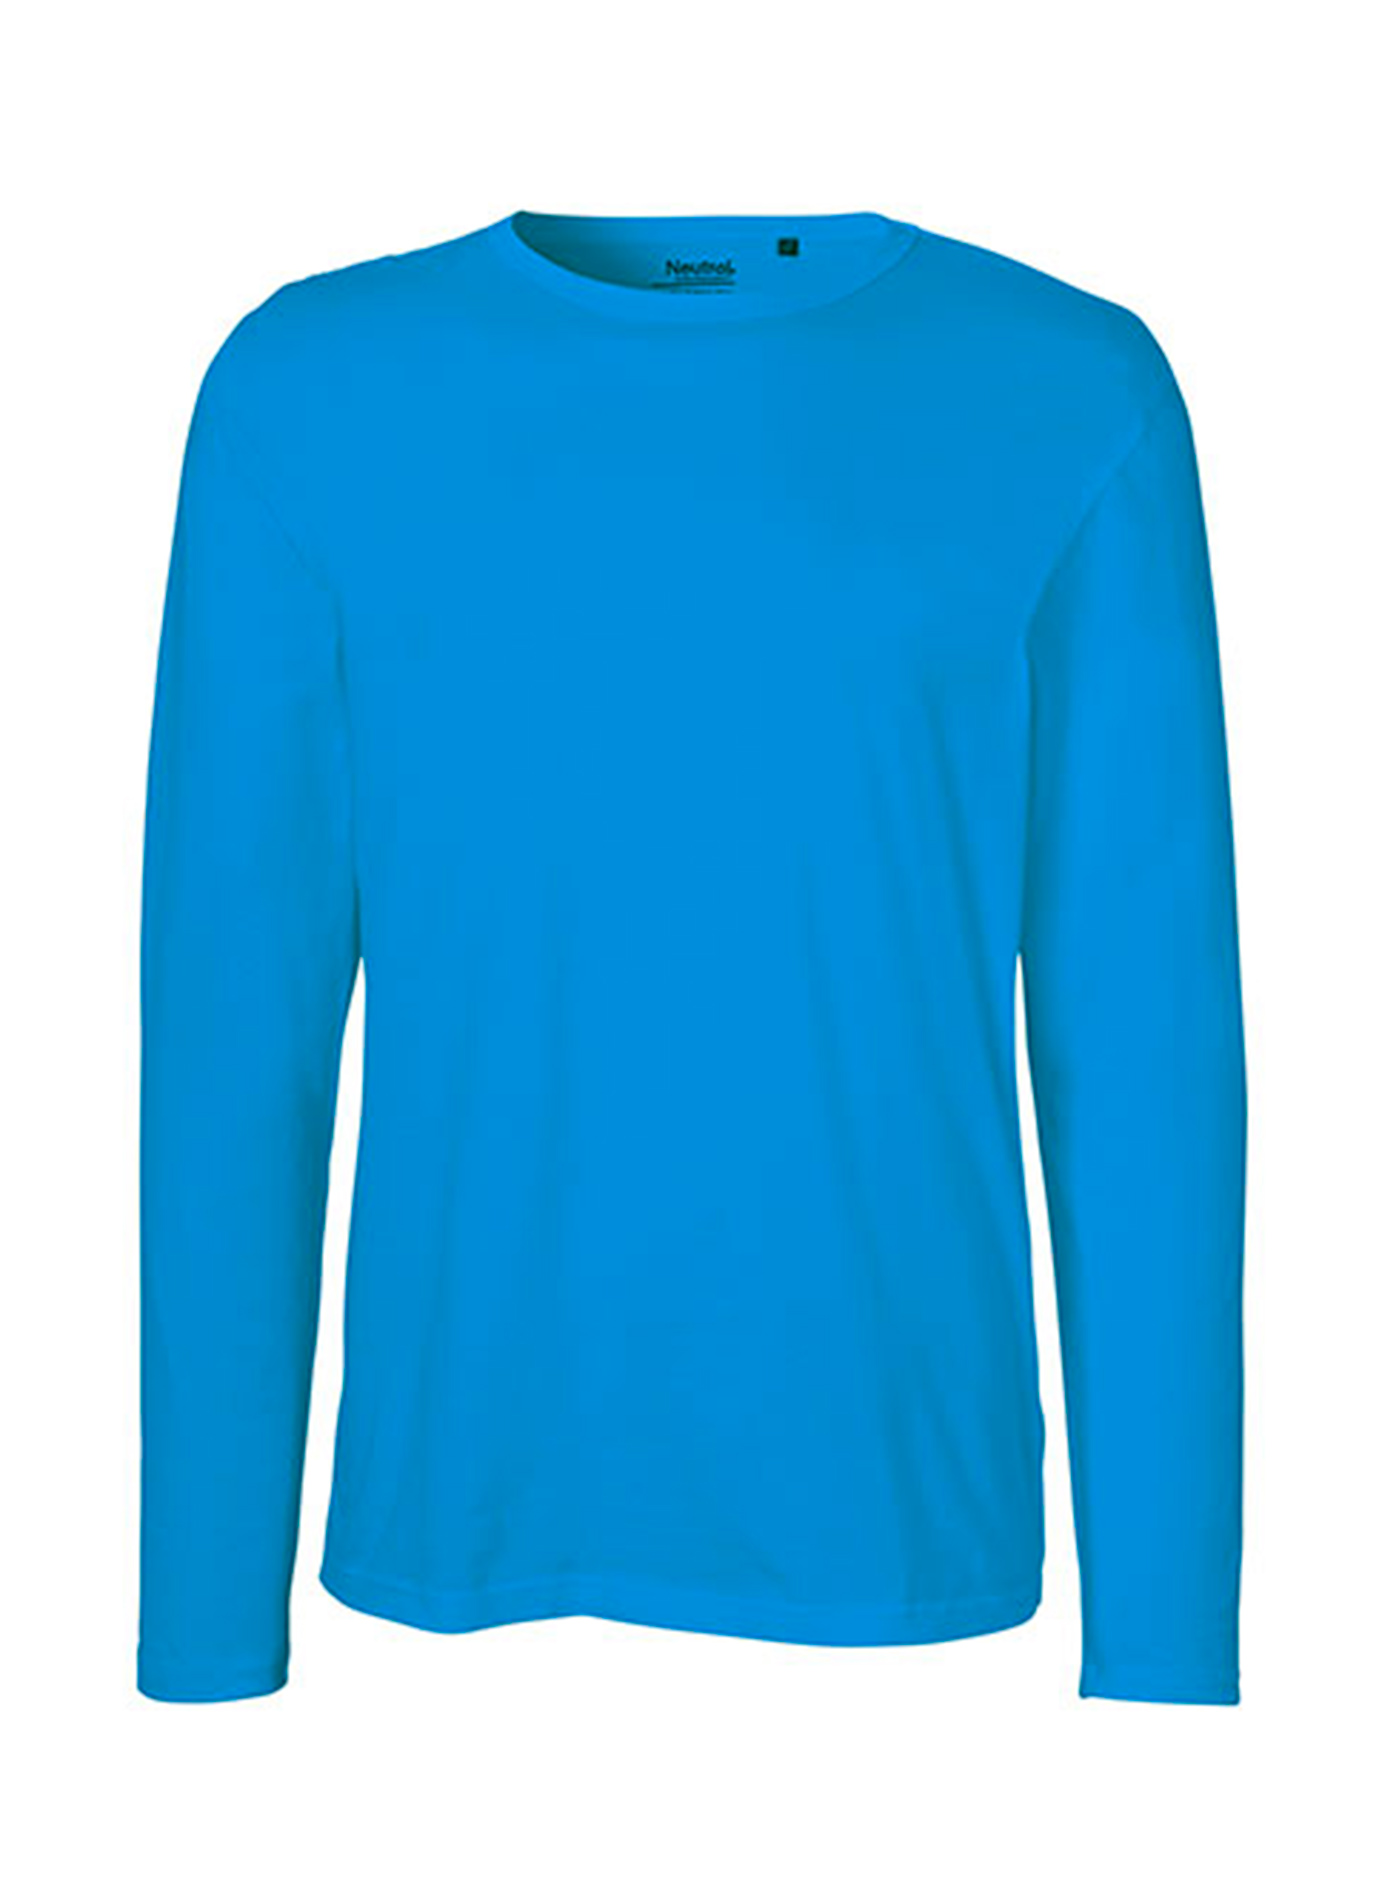 Pánské tričko s dlouhým rukávem Neutral - Safírově modrá XXL